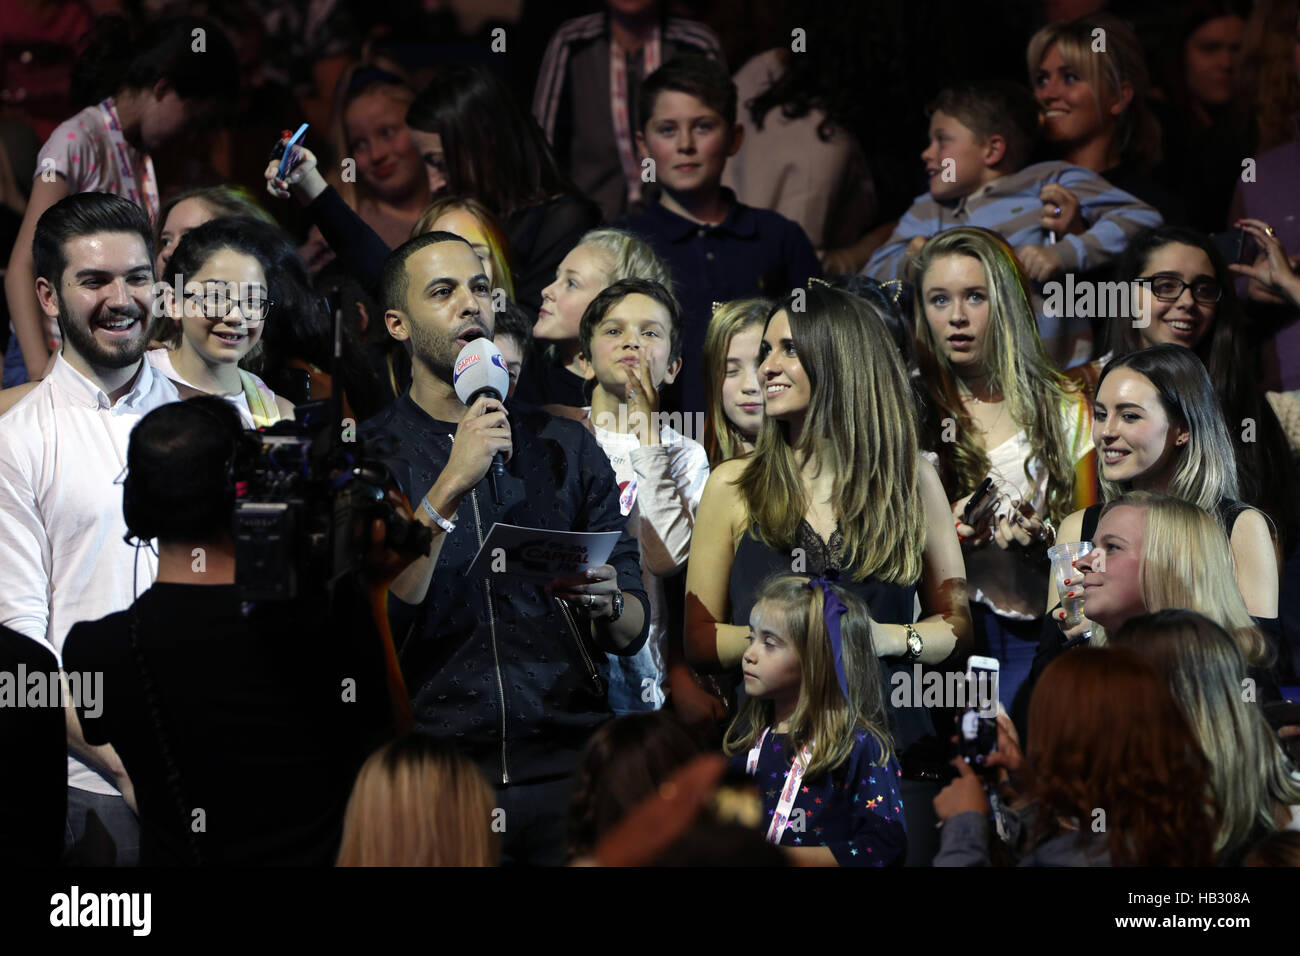 Marvin Humes in der Menge auf der Bühne in der Hauptstadt Jingle Bell Ball mit Coca-Cola in der Londoner O2 Arena. PRESSEVERBAND Foto. Bild Datum: Samstag, 3. Dezember 2016. Bildnachweis sollte lauten: Yui Mok/PA Wire Stockfoto